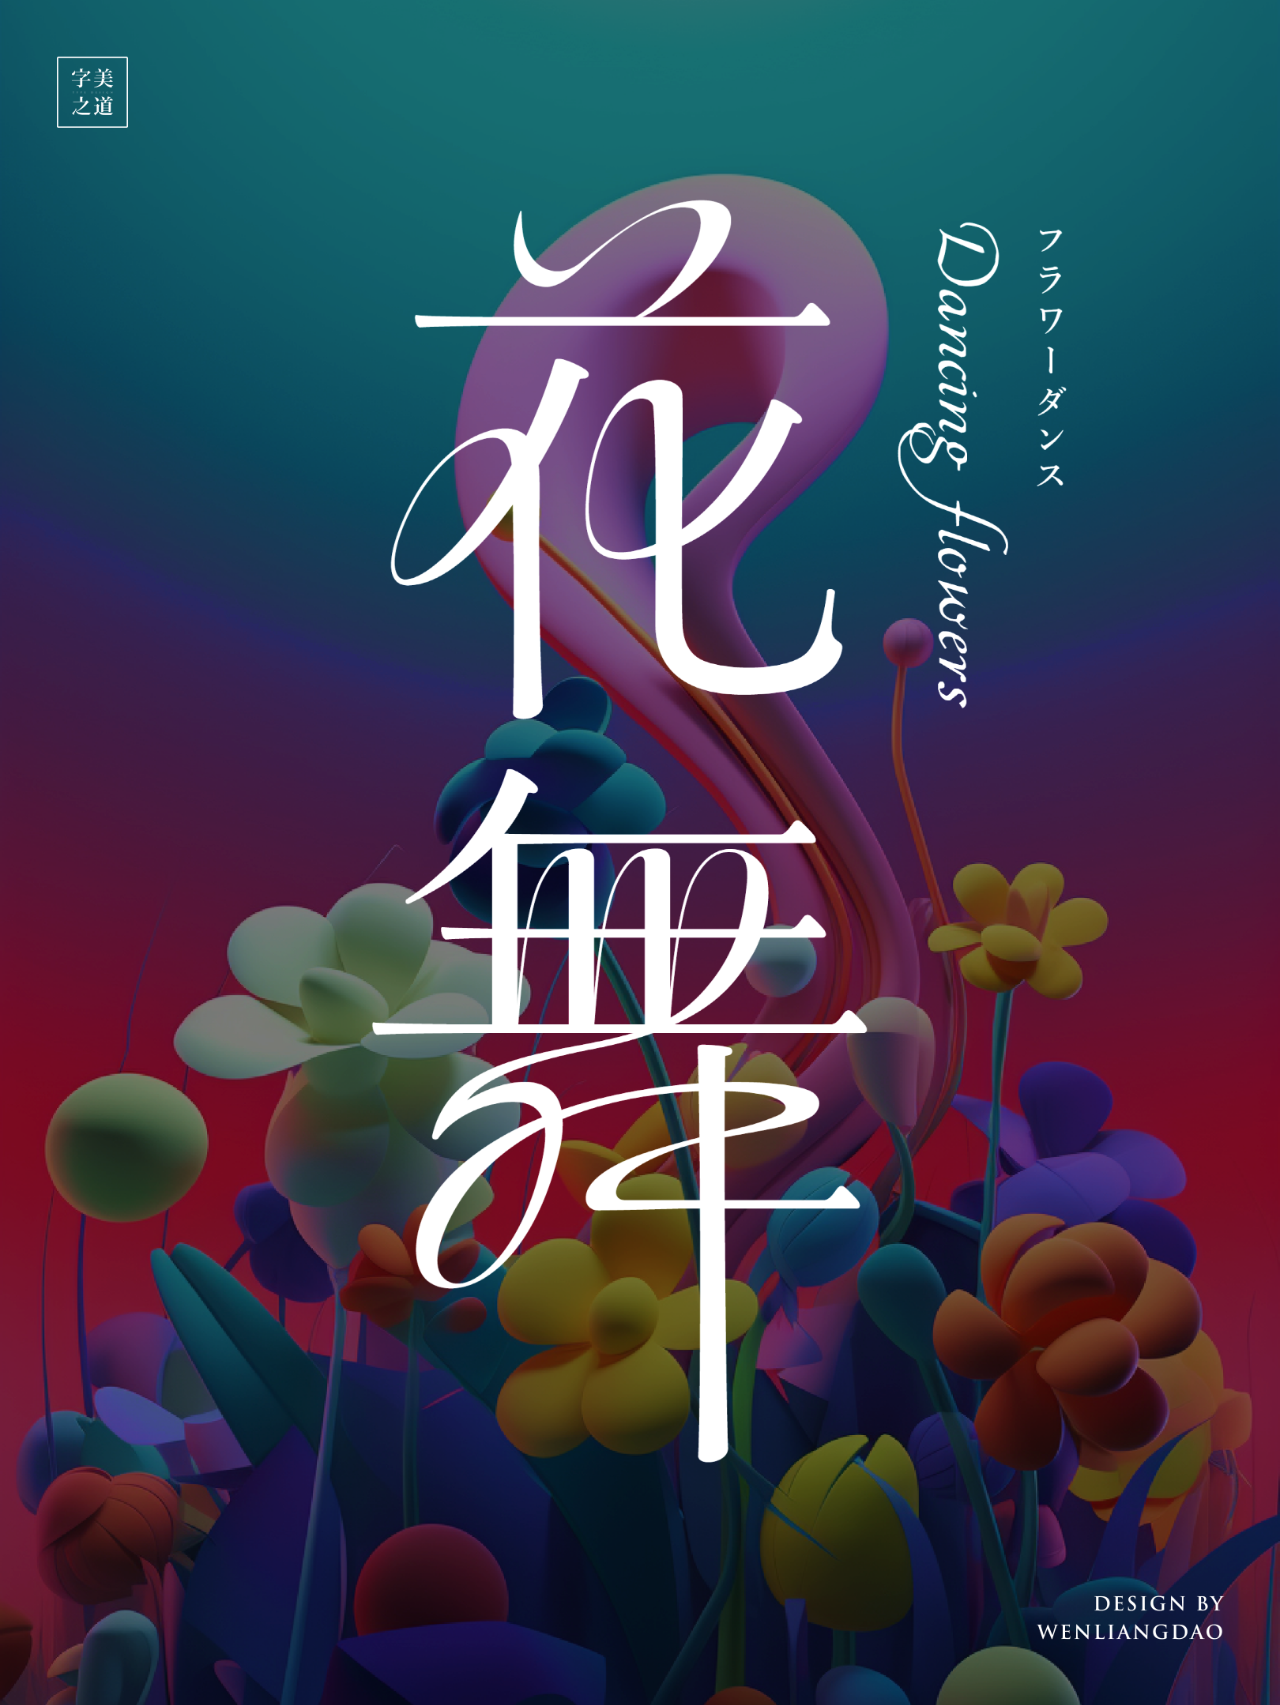 中文标题字体设计收集-易看设计 - 专业设计师平台